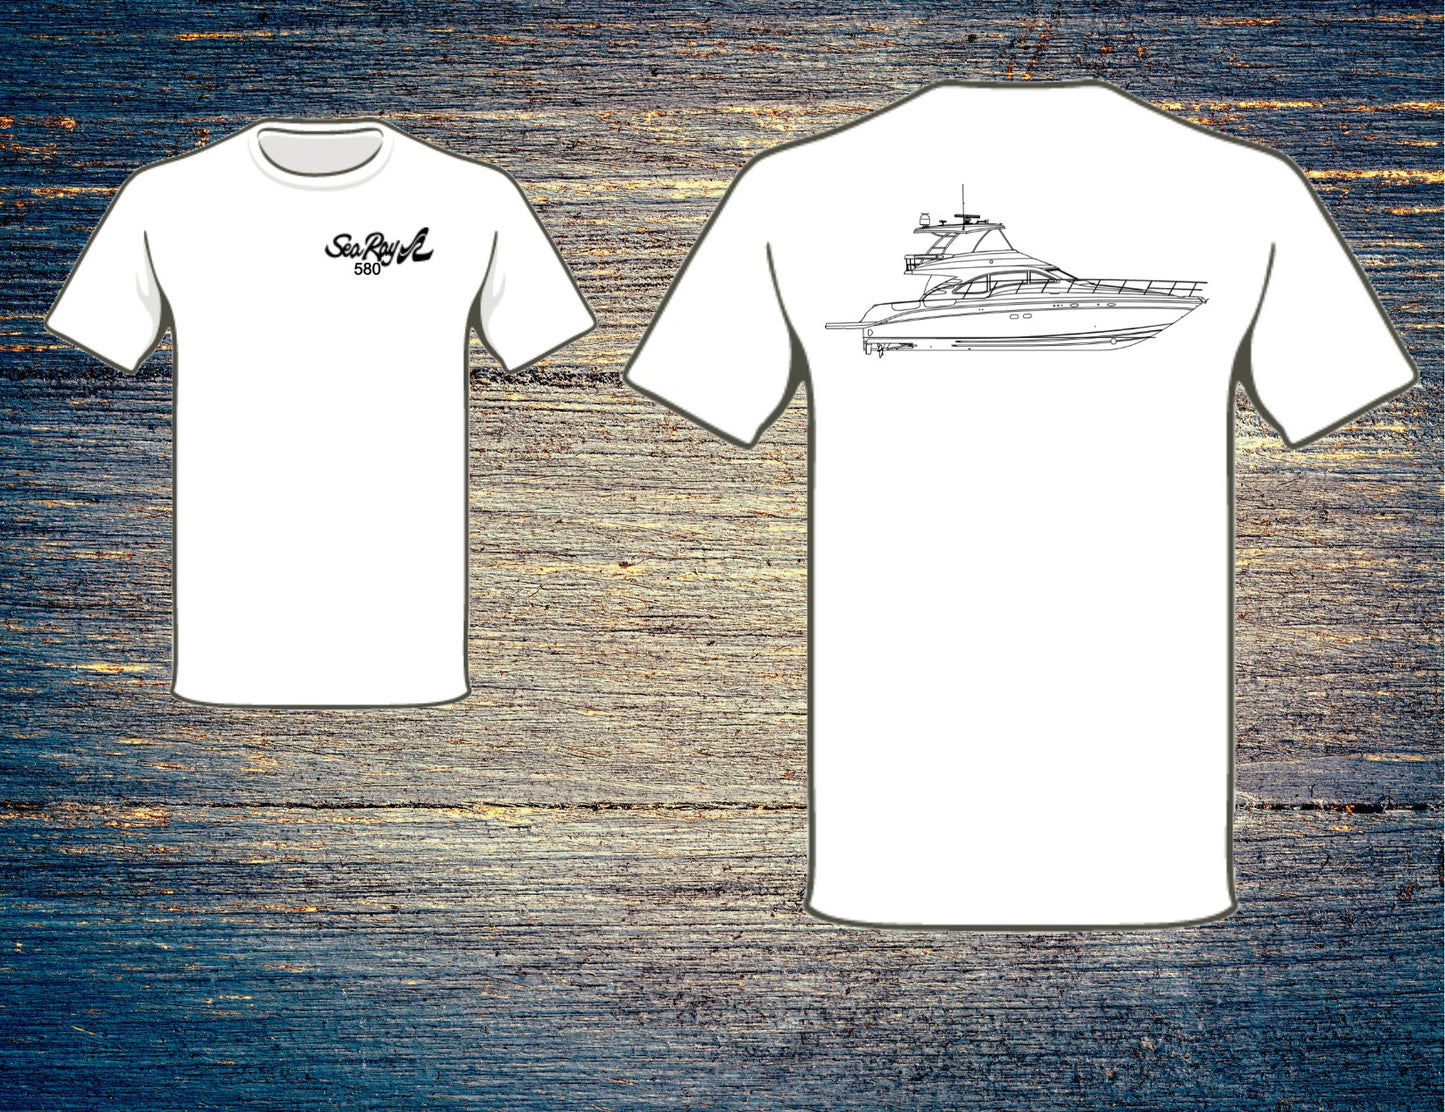 Sea Ray 580 Sedan Bridge T-Shirt